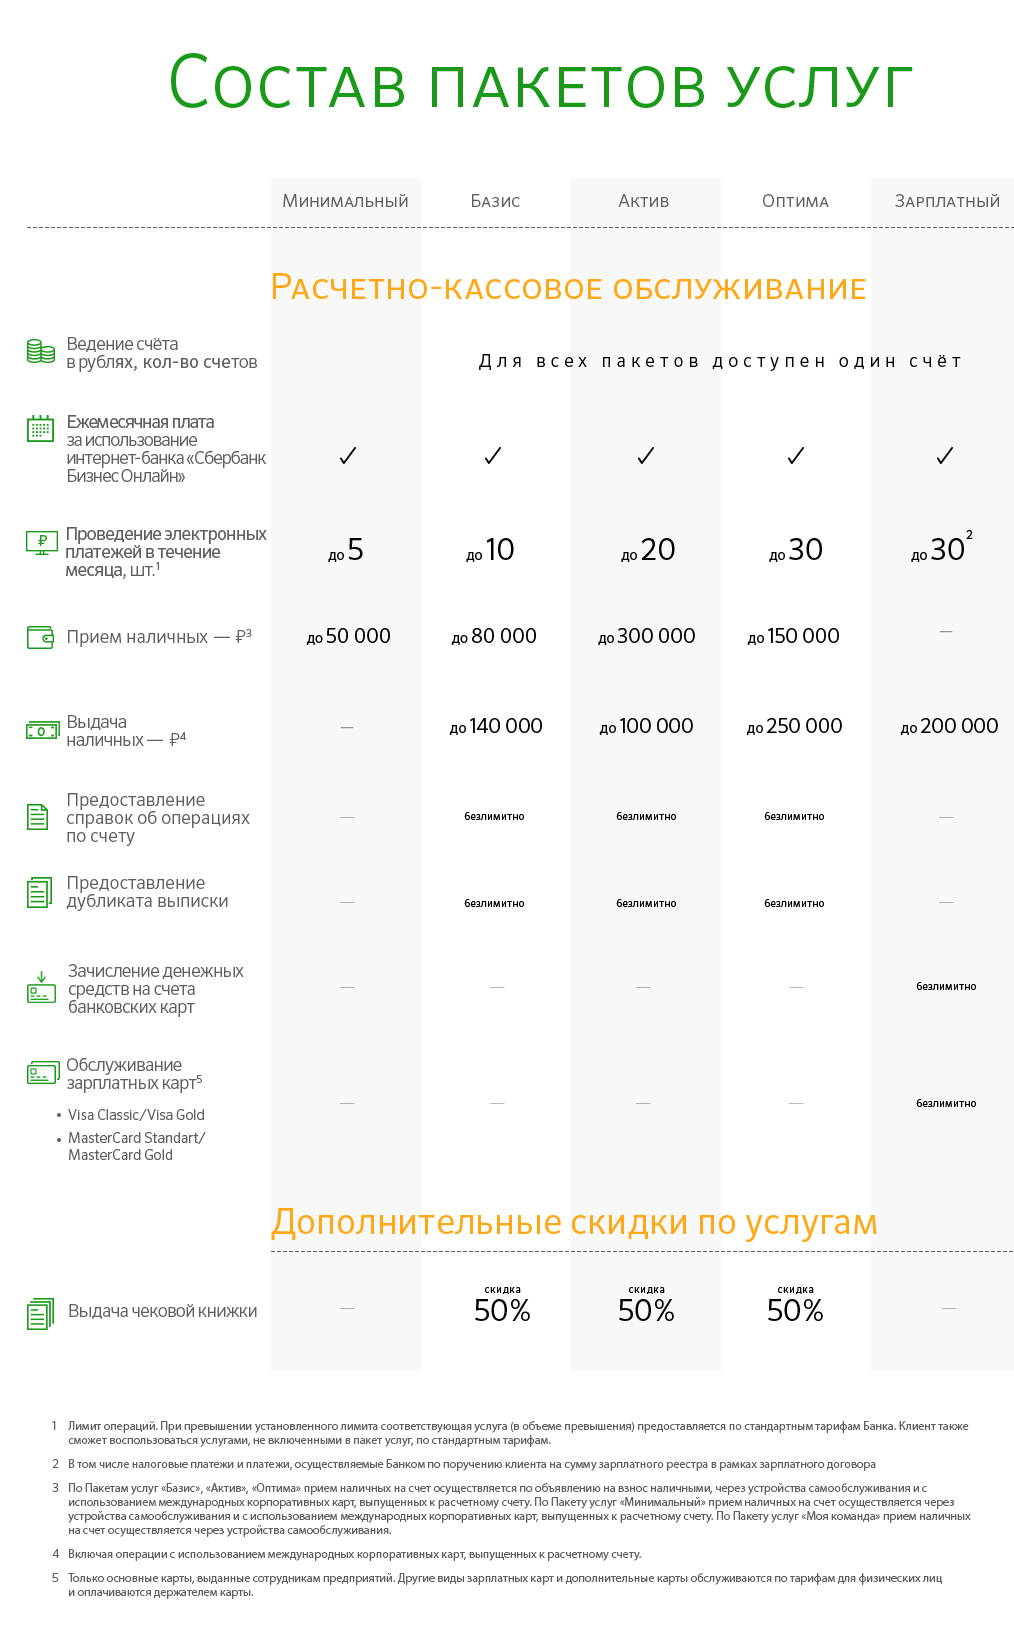 Как получить возможность снизить затраты на расчетно-кассовое обслуживание?  - новости Владимирской области